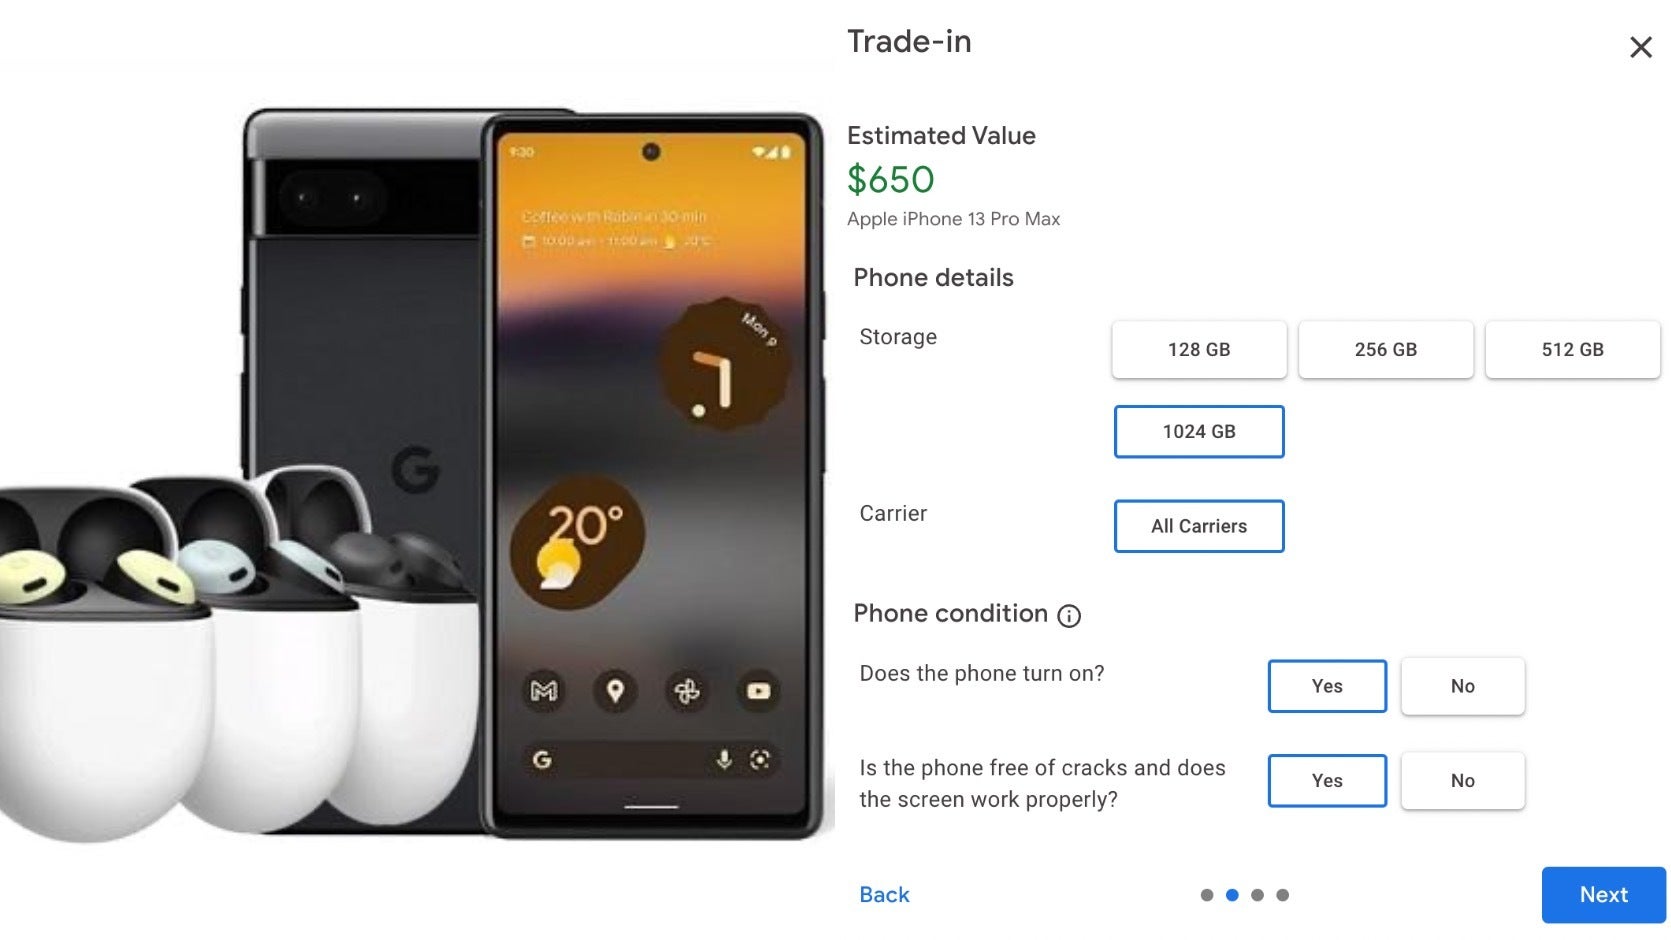 גוגל תשלם לך כדי להחליף את האייפון שלך בפיקסל.  - הנחות ומתנות לבאגים: גוגל מנסה להערים על אנשים לקנות טלפונים חדשים של Pixel?